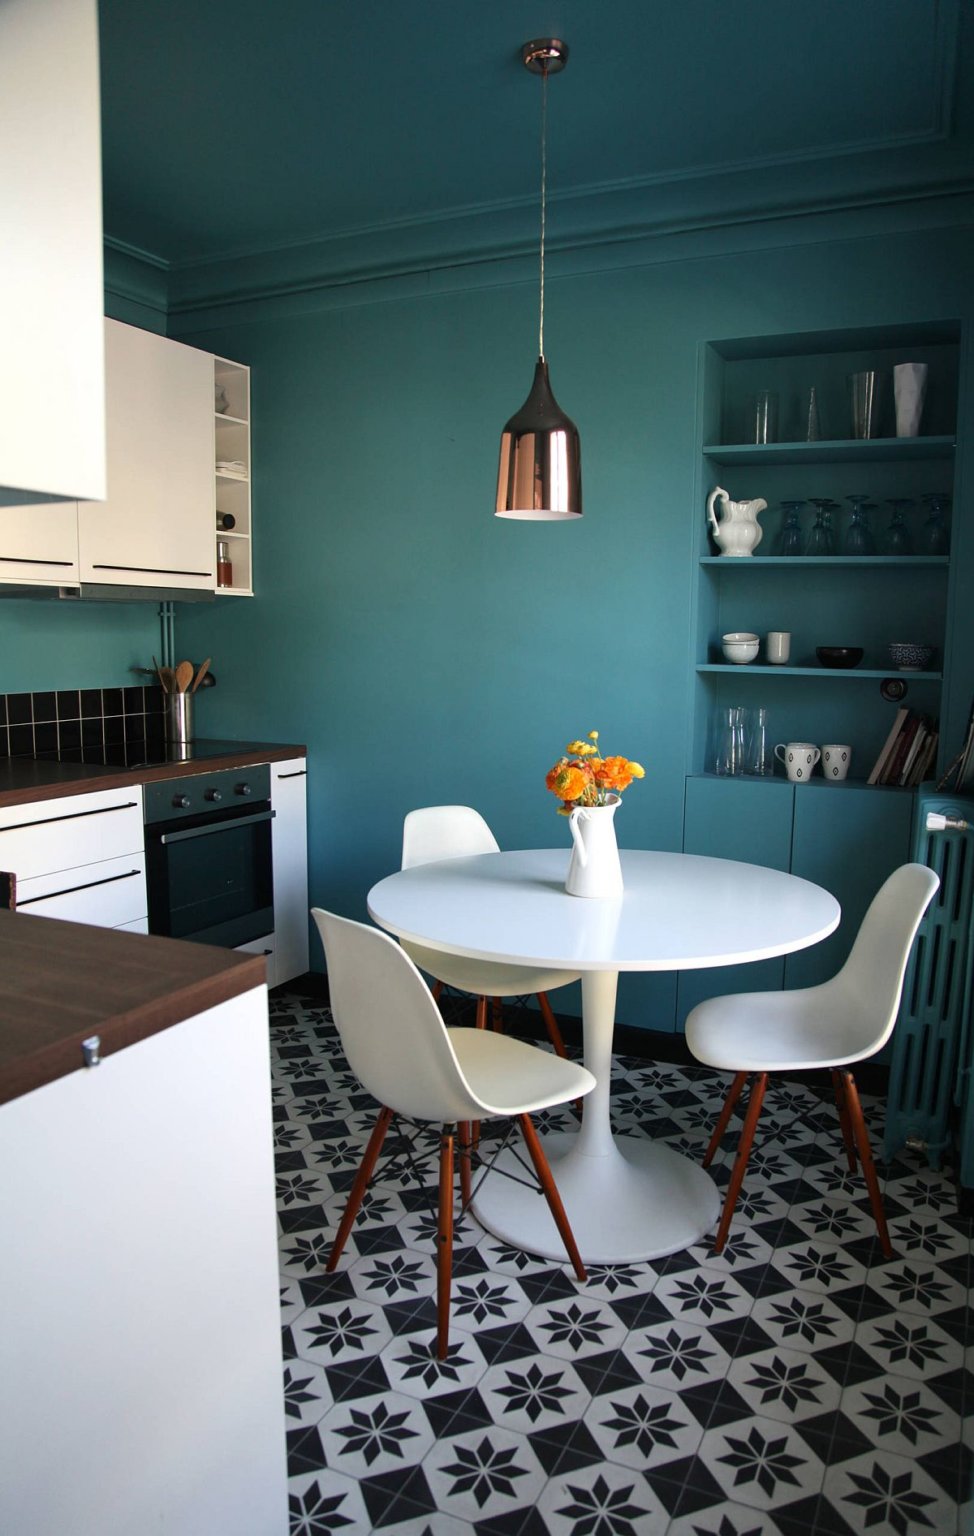 hình ảnh phòng bếp nhỏ đẹp với tường màu xanh ngọc, sàn lát gạch bông đen trắng